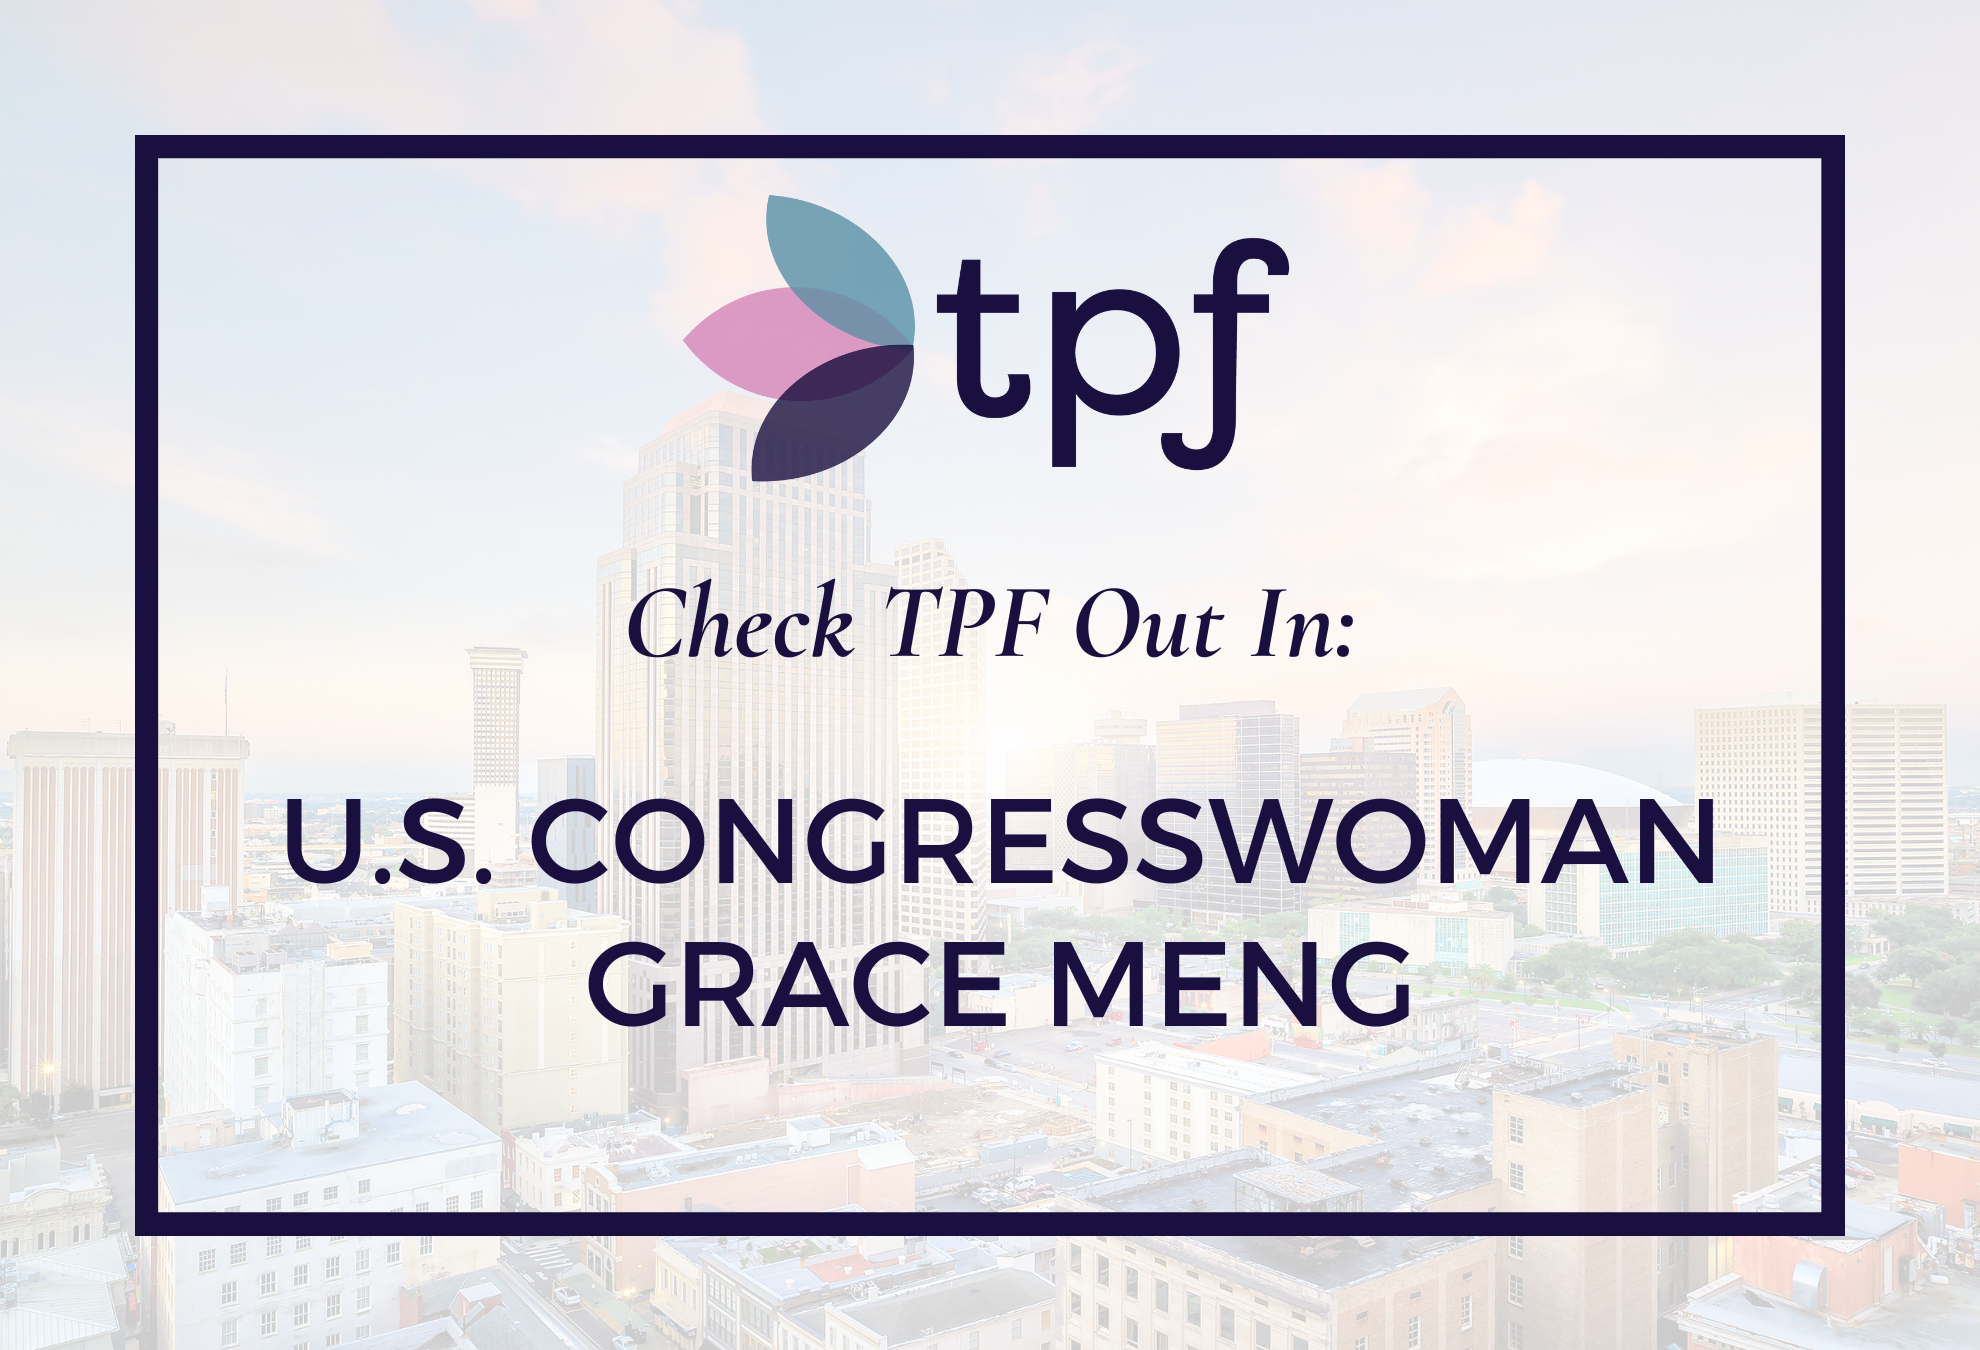 TPF FEATURED ON U.S. CONGRESSWOMAN GRACE MENG’S WEBSITE